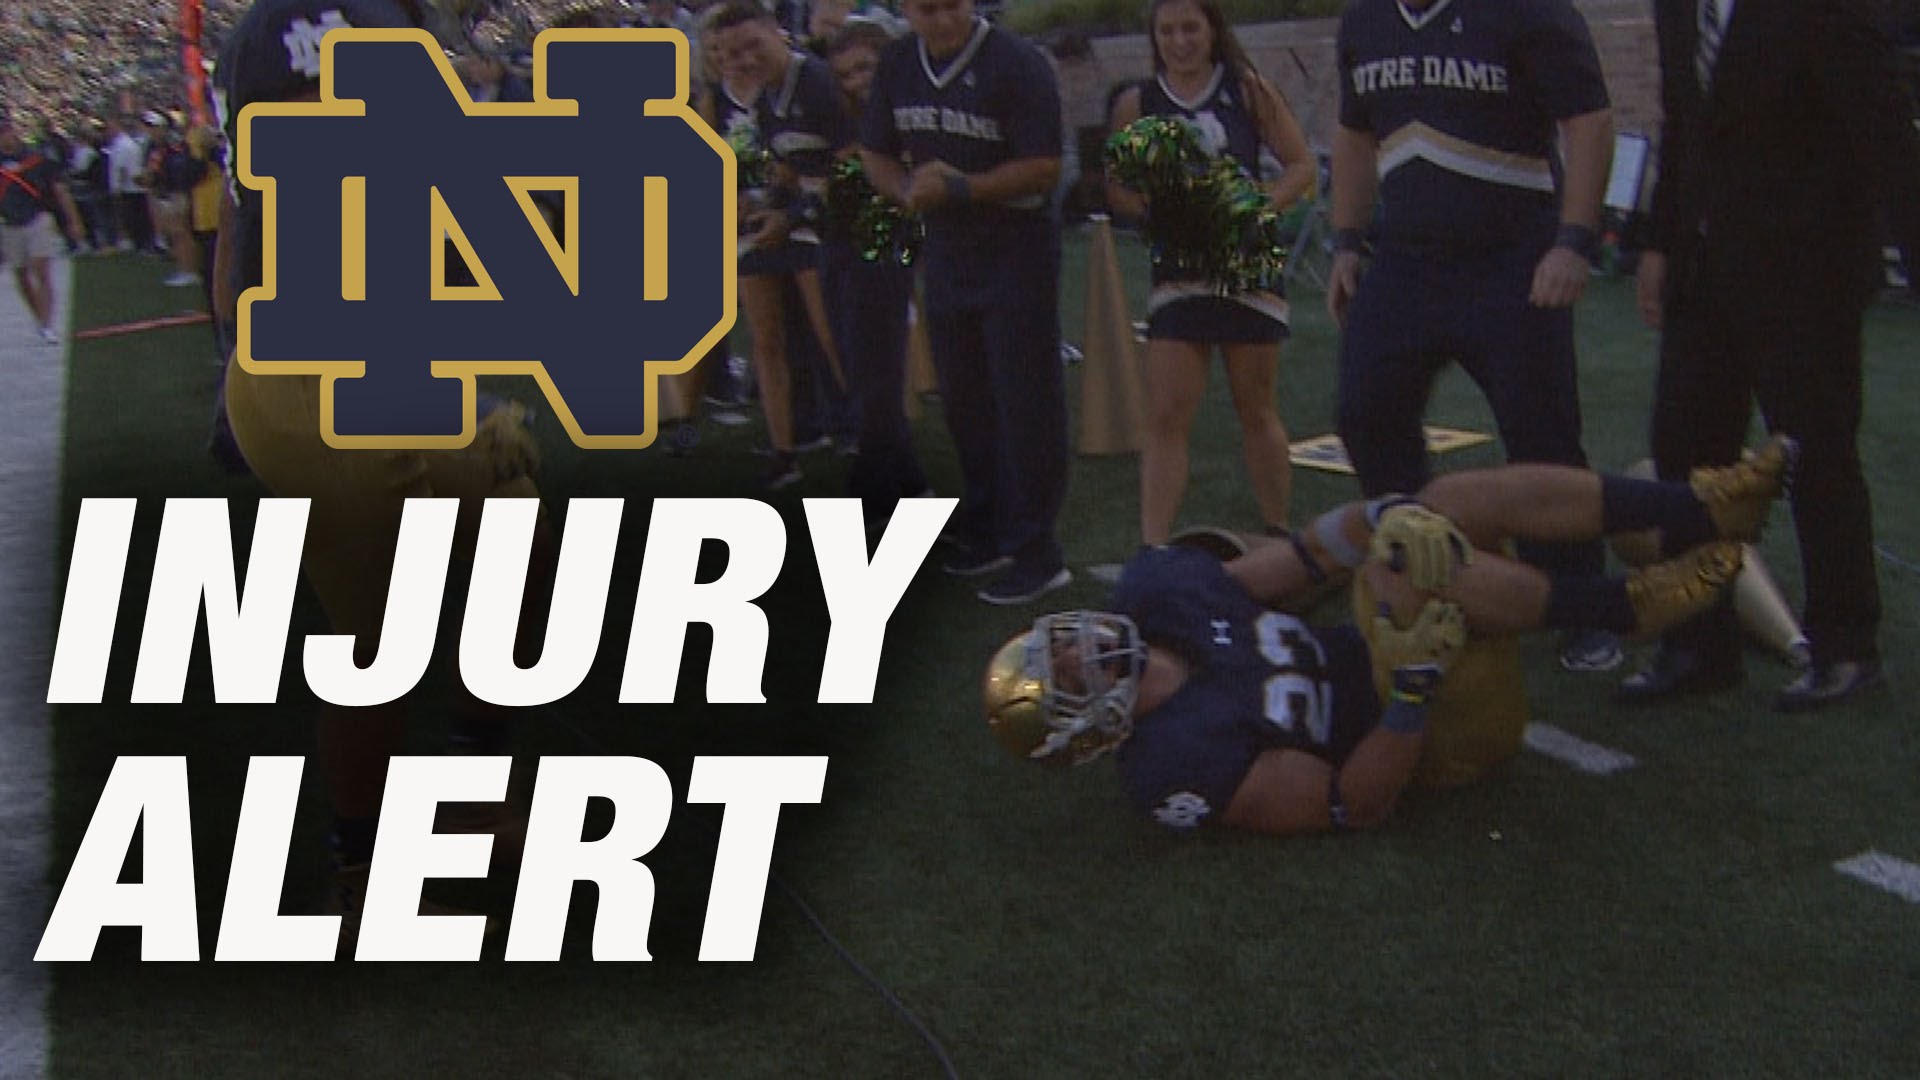 Notre Dame safety Drue Tranquill injures himself celebrating